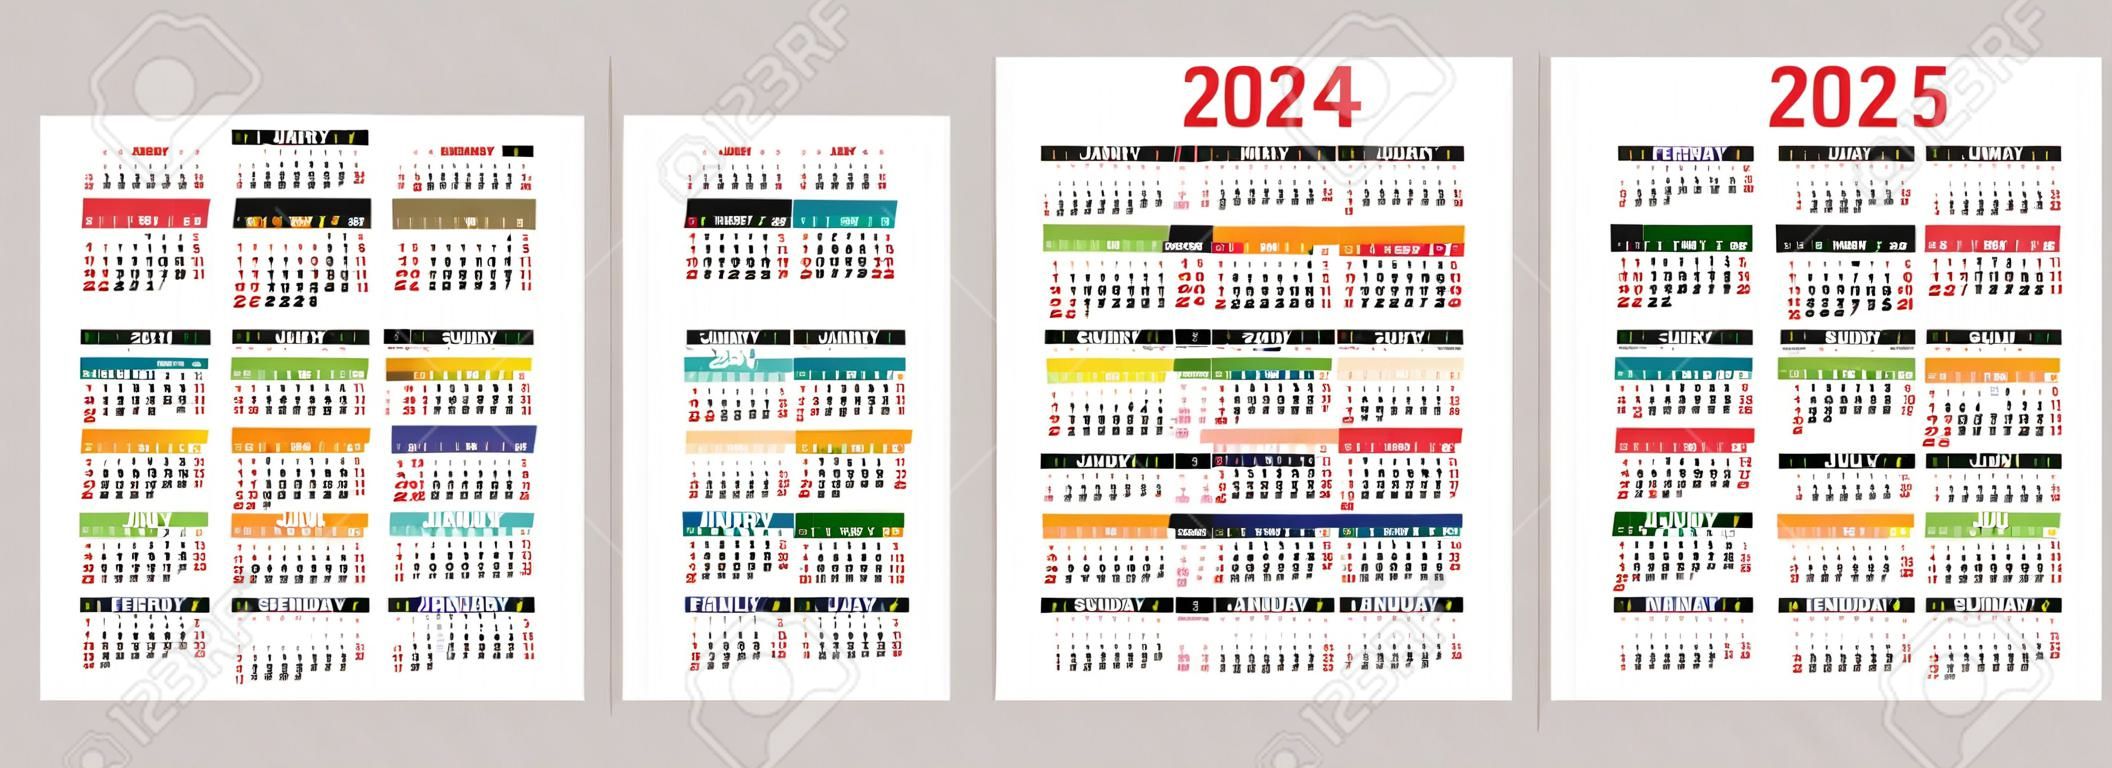 Calendário da época 2023/2024 já é conhecido